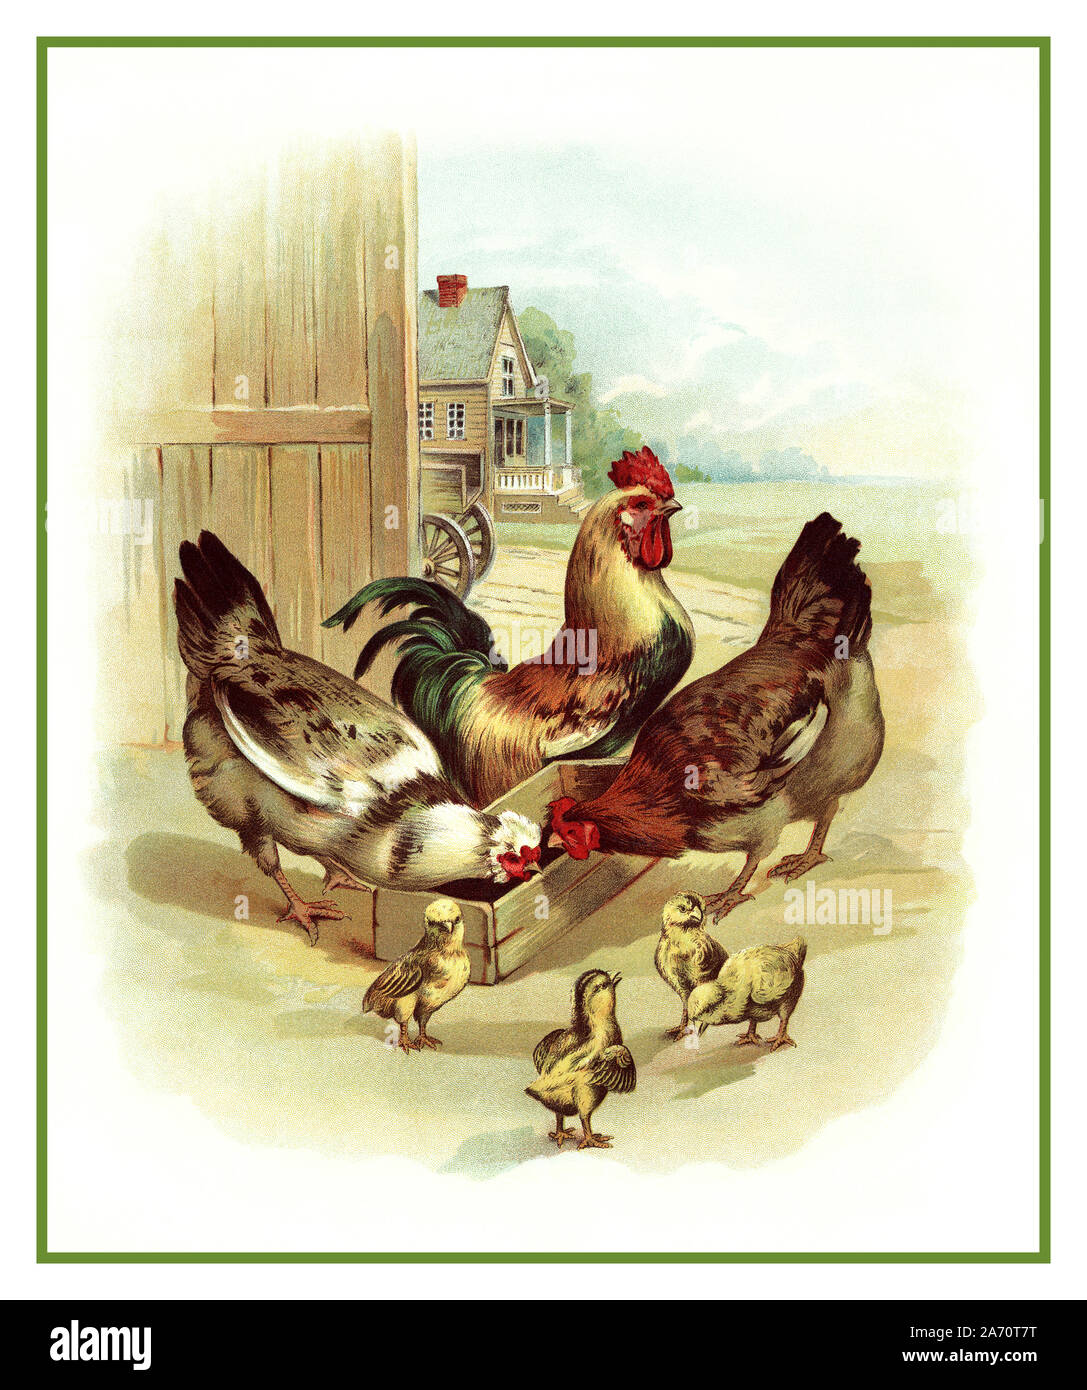 Jahrgang 1890 Organic Farm Seite Abbildung Bild von ein Hahn, zwei Hühner und vier Küken in einem Bauernhof auf dem Bauernhof. Die Hähnchen essen von einer hölzernen Fütterung, der Hahn ist stolz darauf, in den Hintergrund und die kleinen Küken aufgeworfen werden, stehen im Vordergrund um so süß. Kinder- Buch von Koerner & Hayes, 1896 Amerika USA Besuch auf dem Bauernhof. Stockfoto